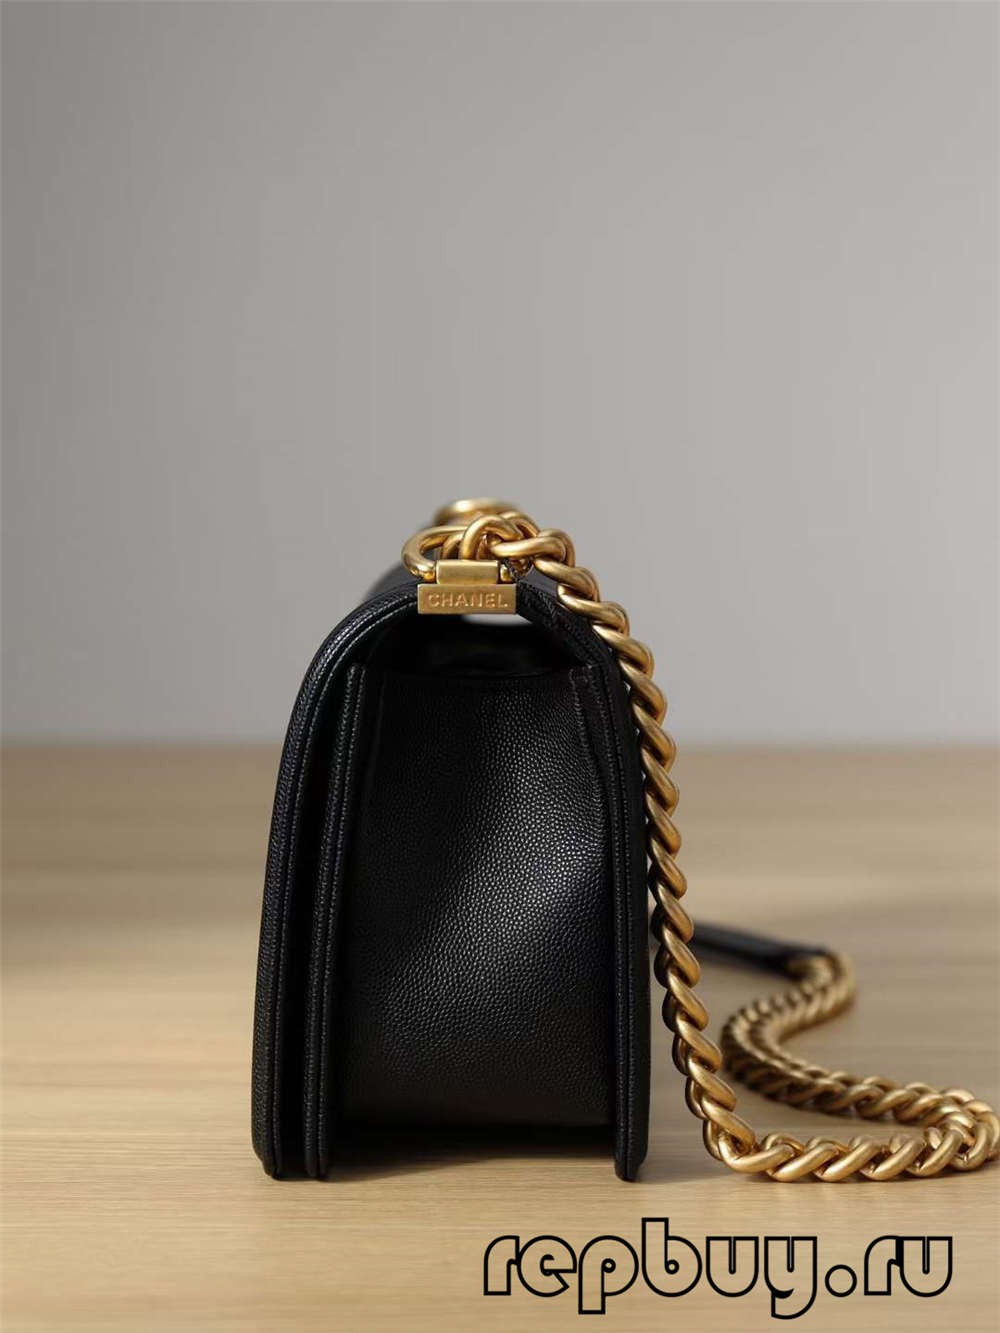 Chanel Leboy Top Replica Handtas Medium Gouden Gesp (2022 Editie)-Beste Kwaliteit Nep Louis Vuitton Tas Online Winkel, Replica Designer Tas Ru